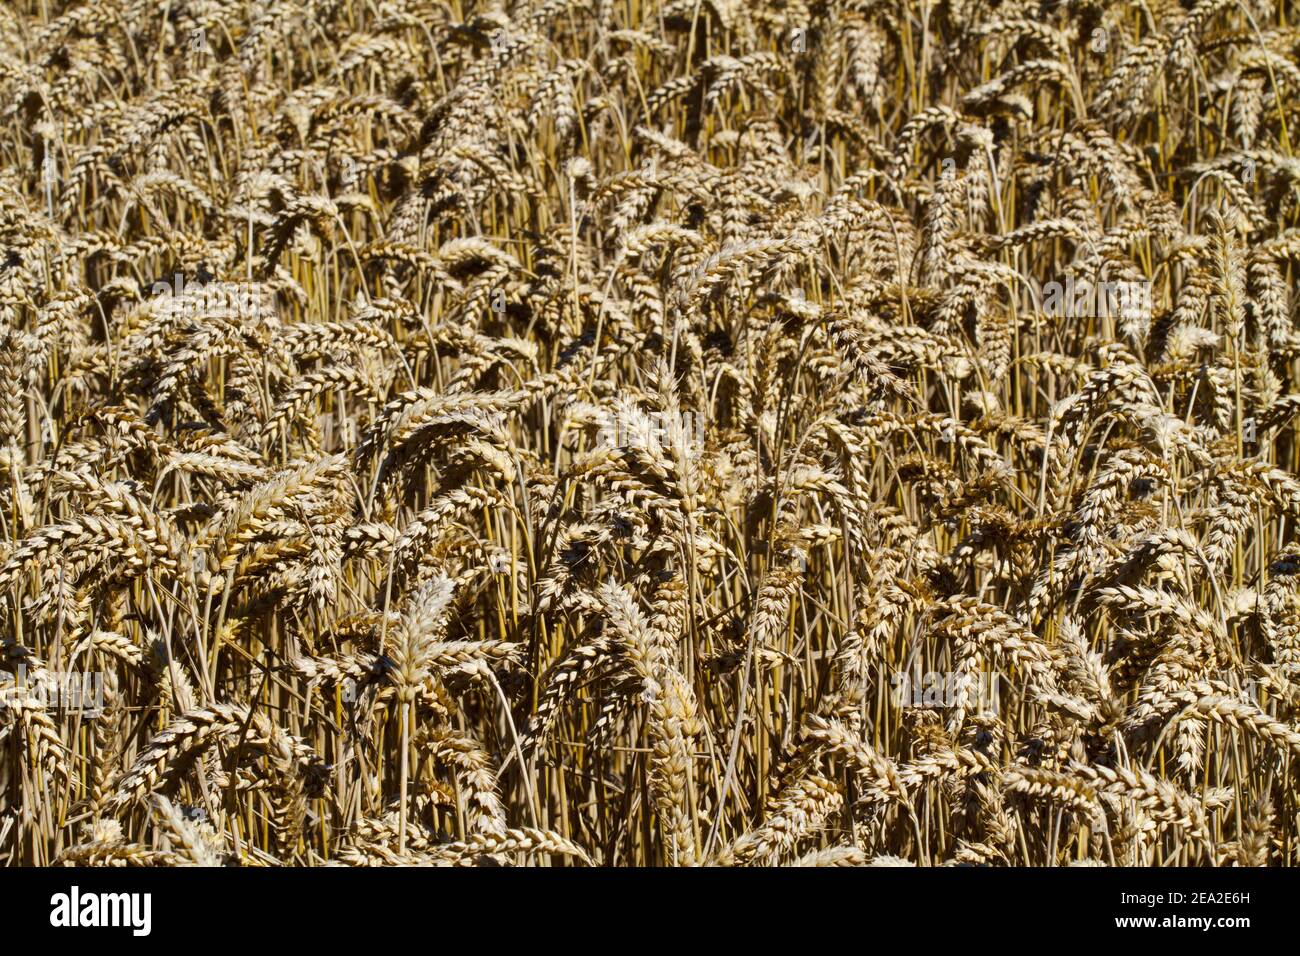 Fond naturel: Champ de blé, récolte sèche presque mûre et prête pour la récolte Banque D'Images